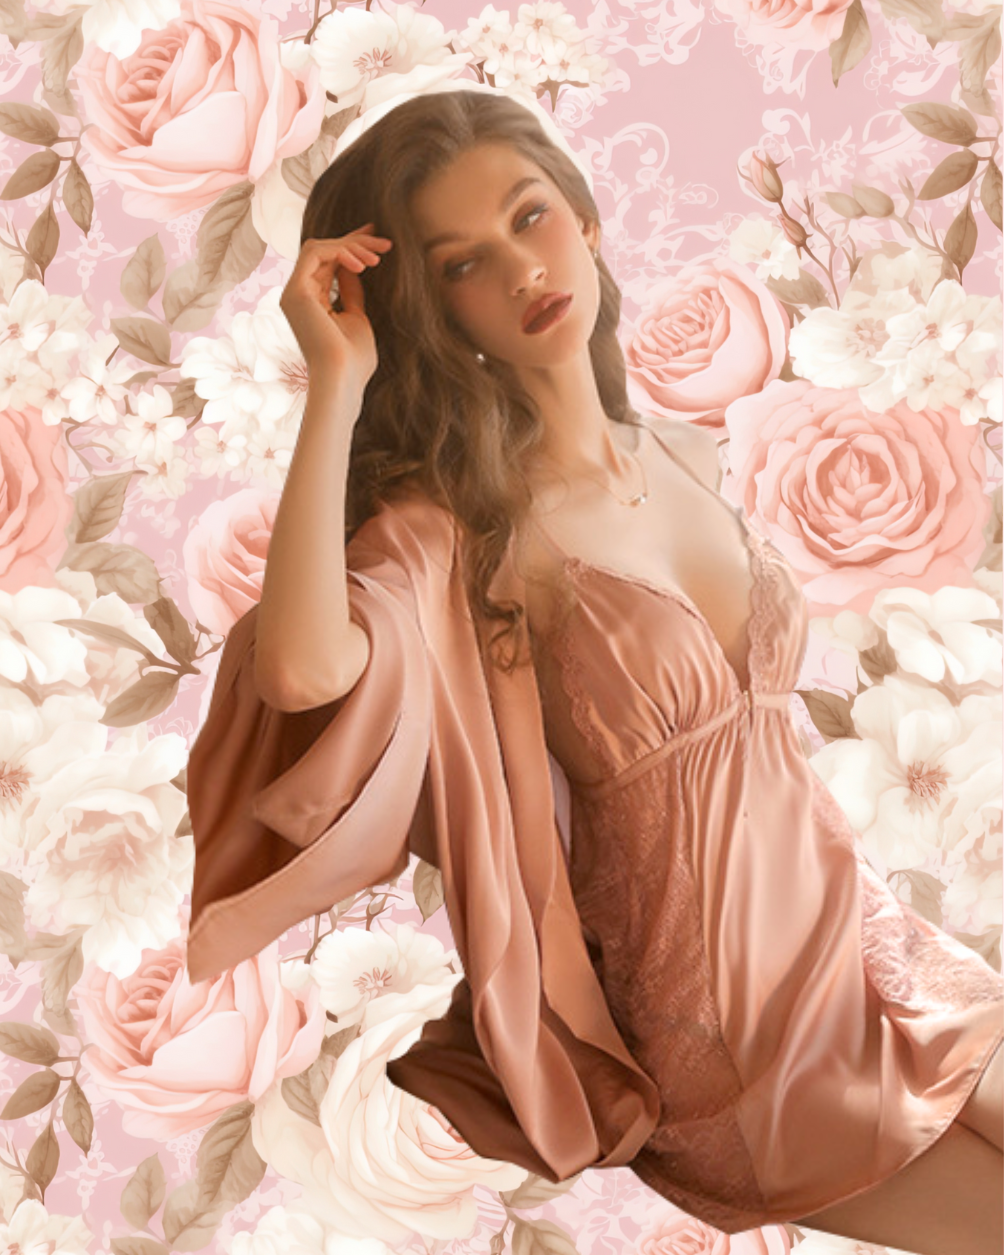 LOUISA Nightdress + Robe Set - Rose Gold